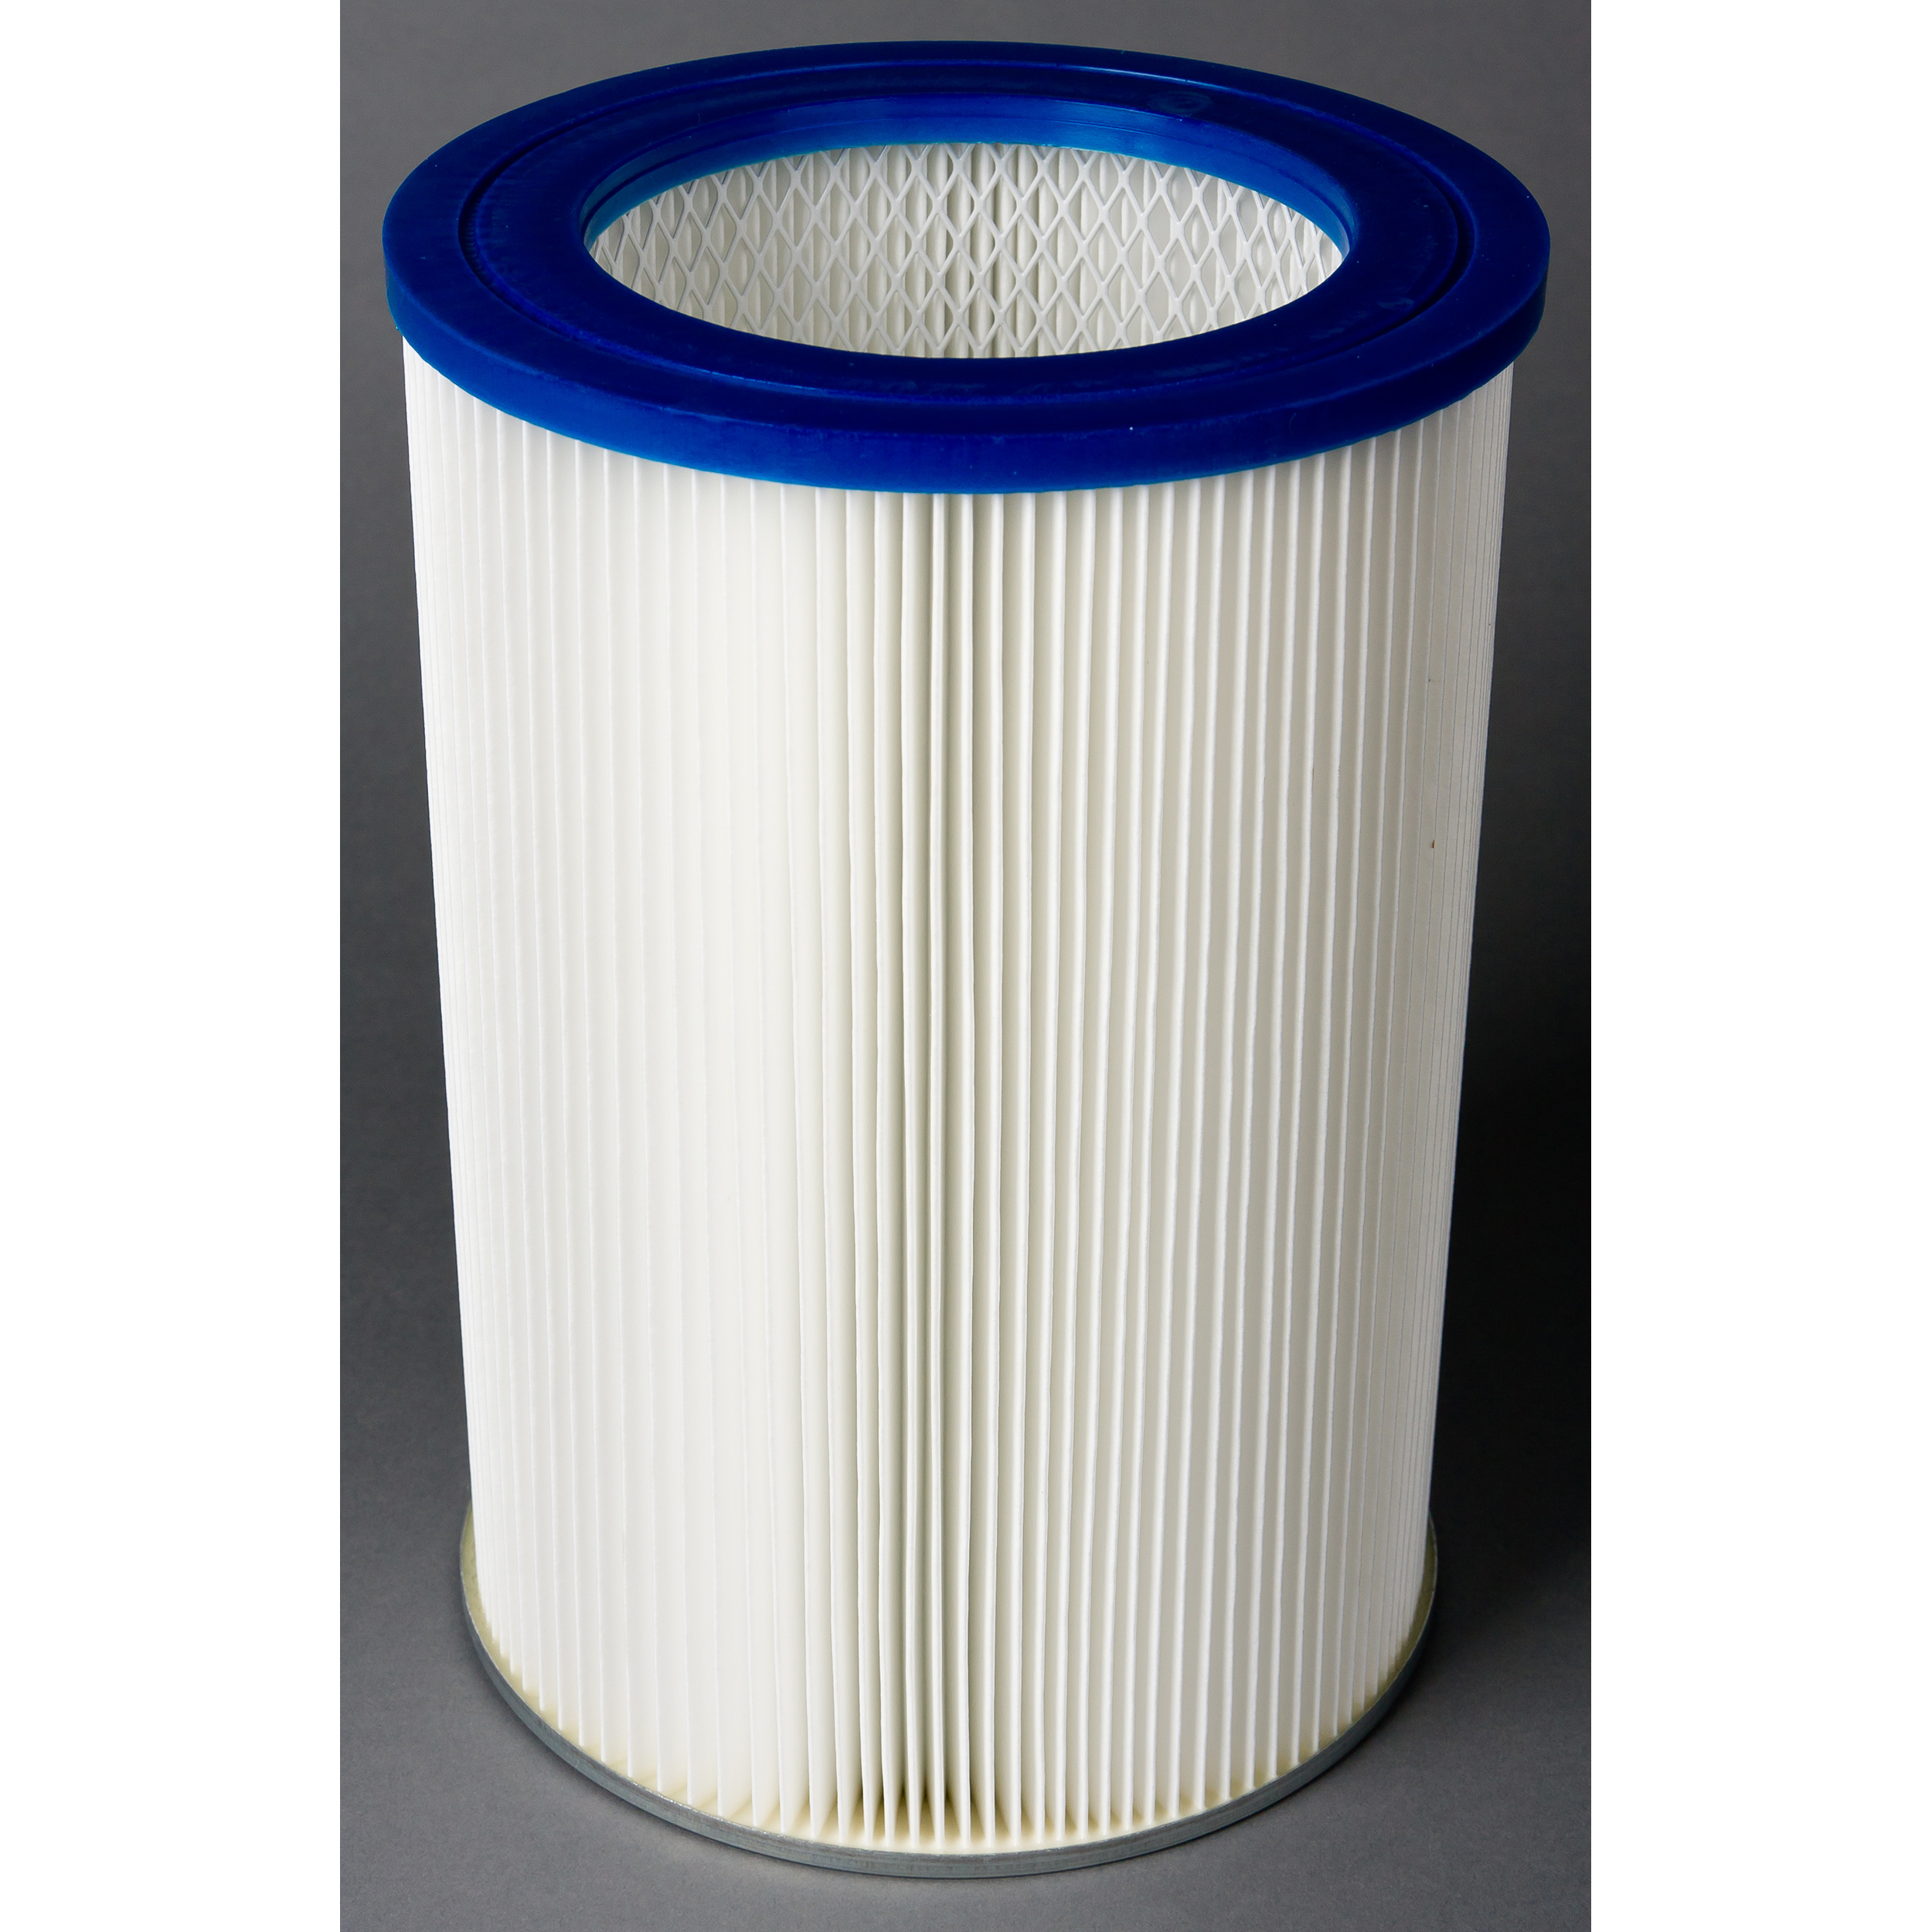 Dustpro Hepa Cartridge Filter, Dry Only, S87768